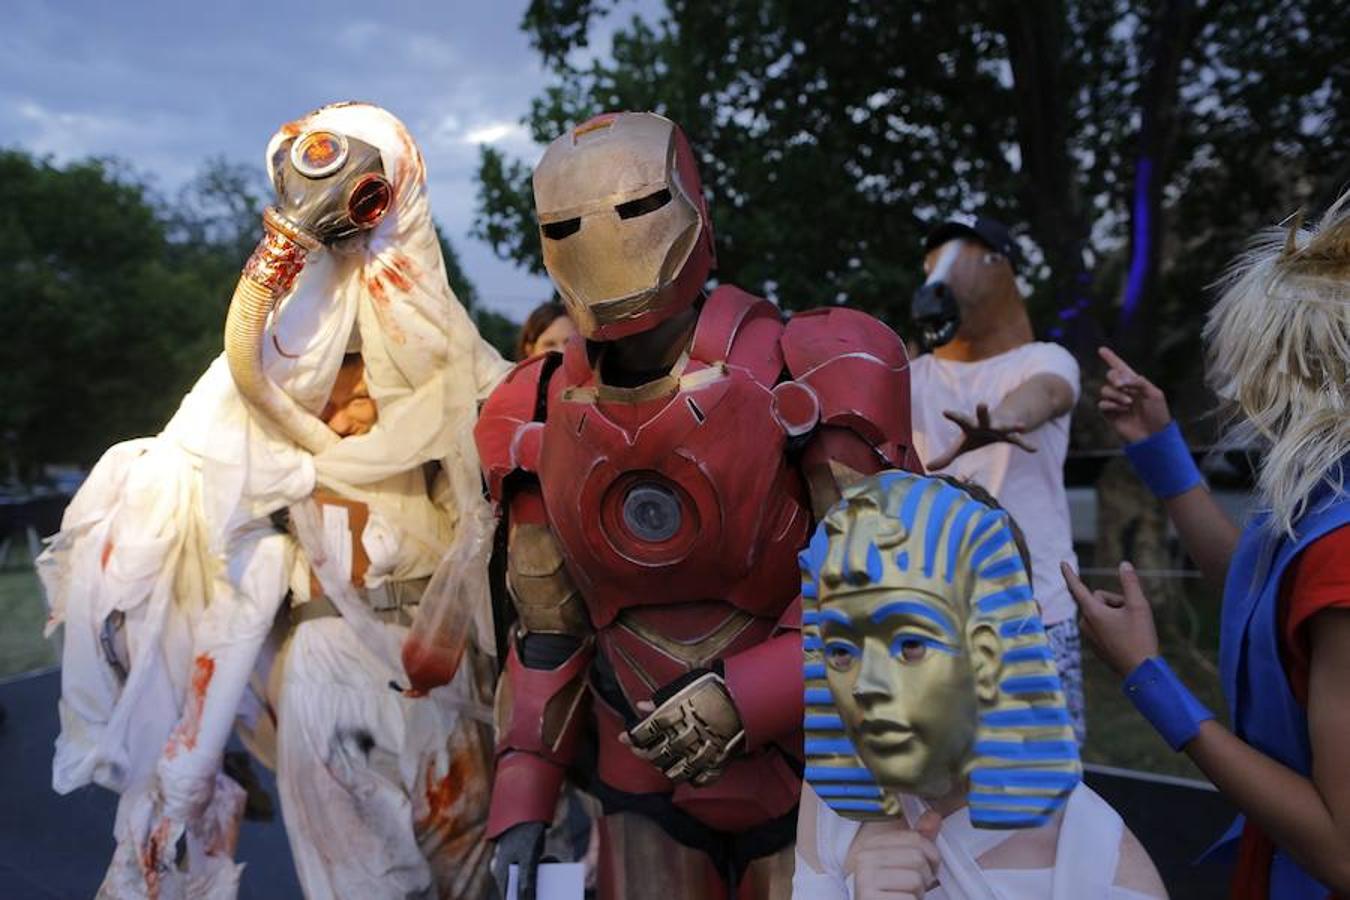 Personas disfrazadas acuden al festival anual de Halloween en el George Hay Park de Johannesburgo (Sudáfrica). La comunidad local organizó el evento para que las familias acudiesen disfrazadas con sus mejores vestidos